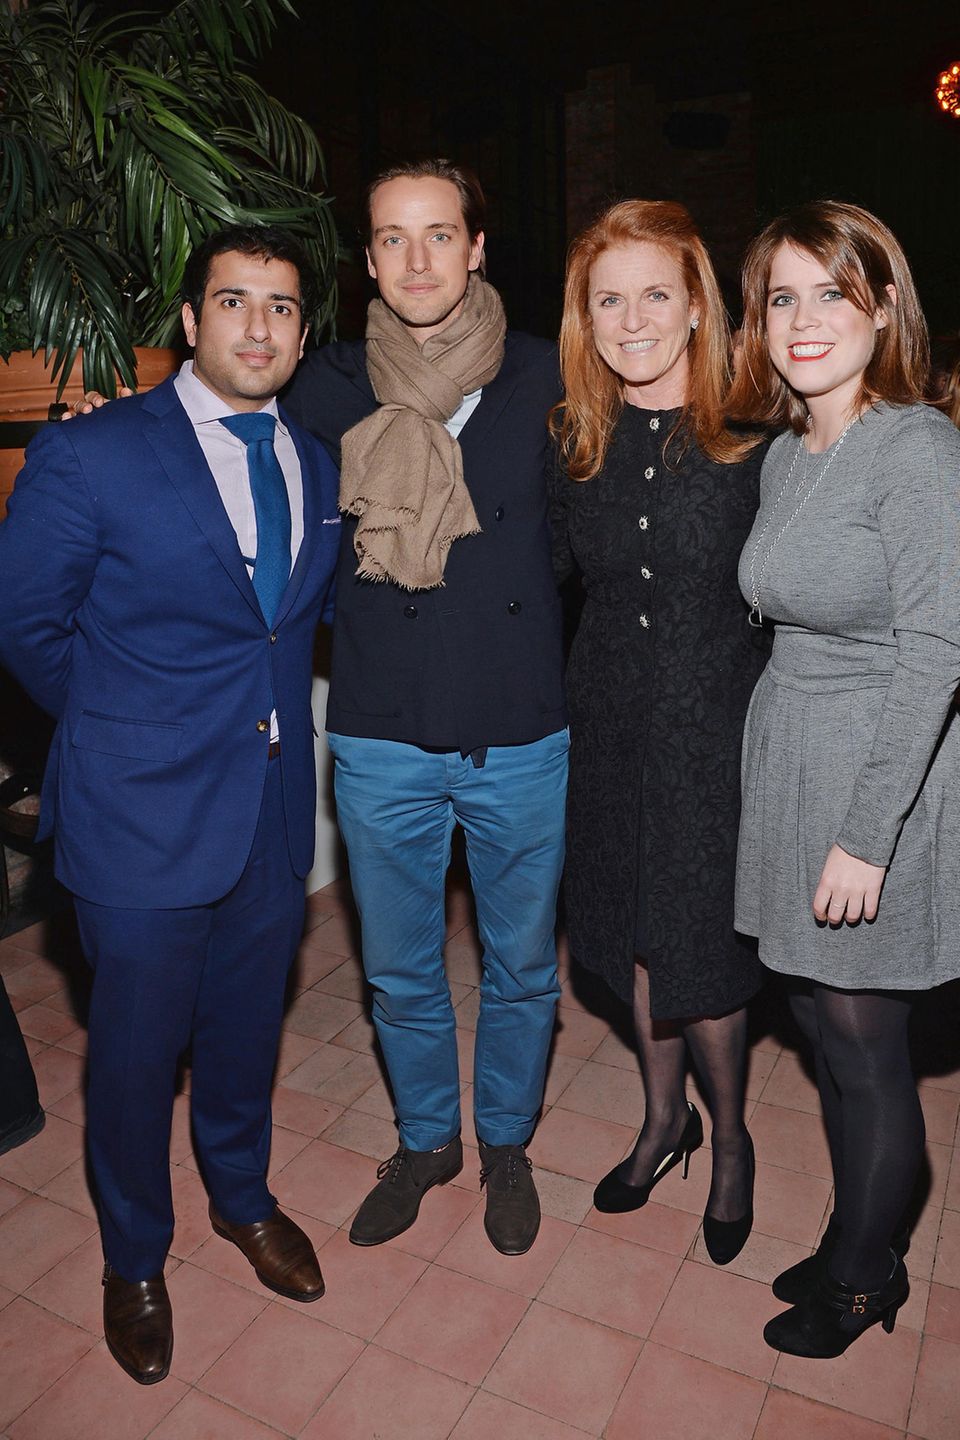 Man kennt sich: Alexander Gilkes (Mitte) und sein Geschäftspartner Osman Khan (links) sind mit den Royals per du. Auf dem Foto posieren sie auf einem Event mit Sarah Ferguson und Prinzessin Eugenie